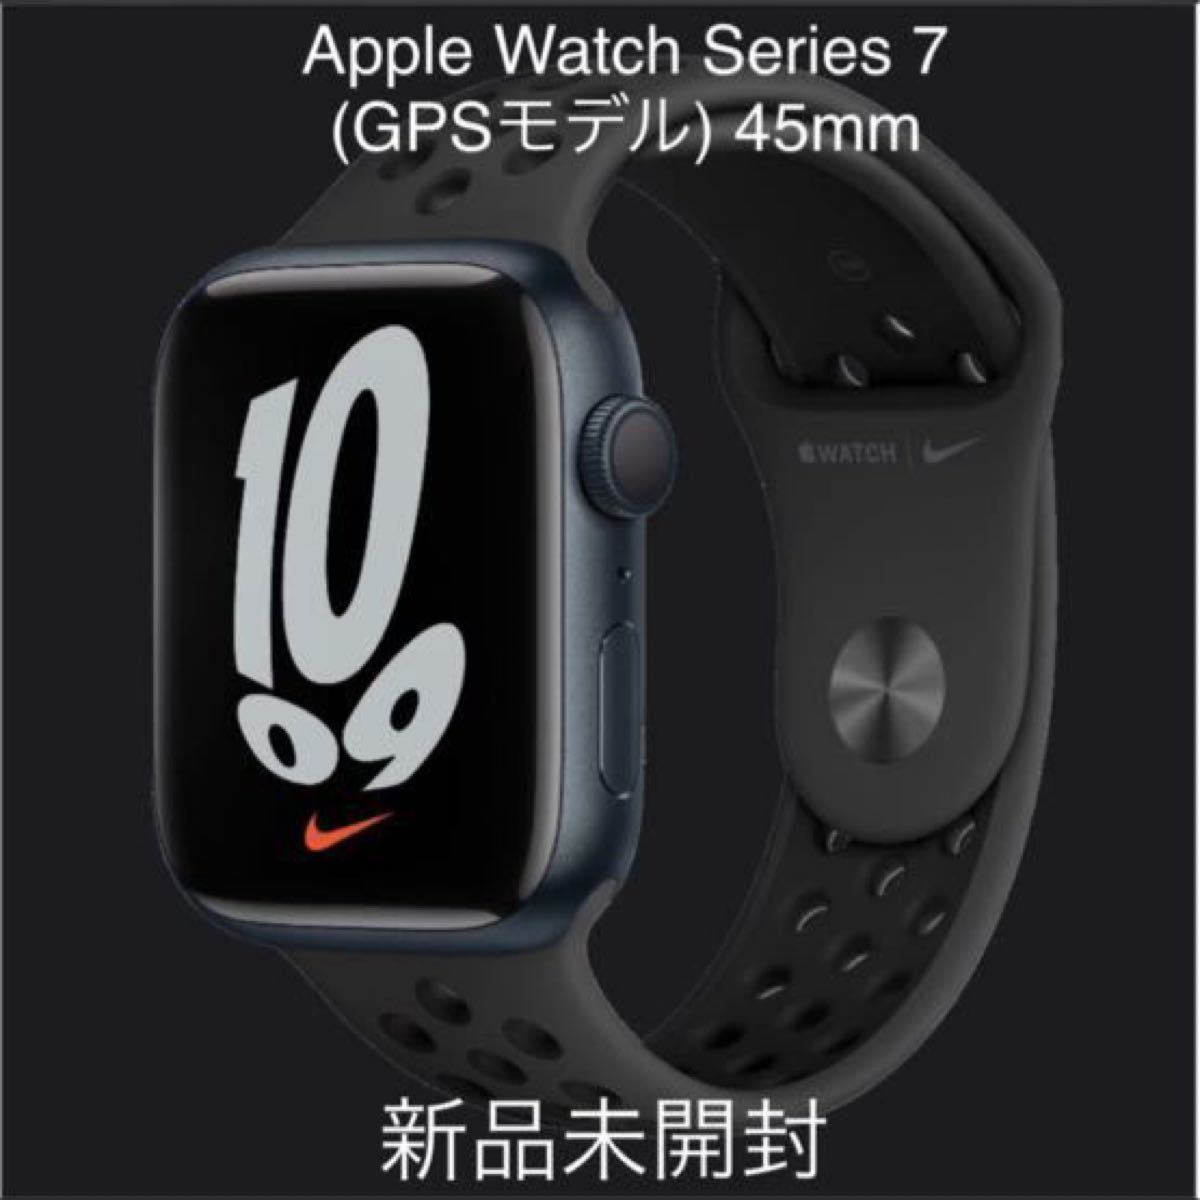 新品未開封 Apple Watch Series 7 GPSモデル 45mm www.pothashang.in